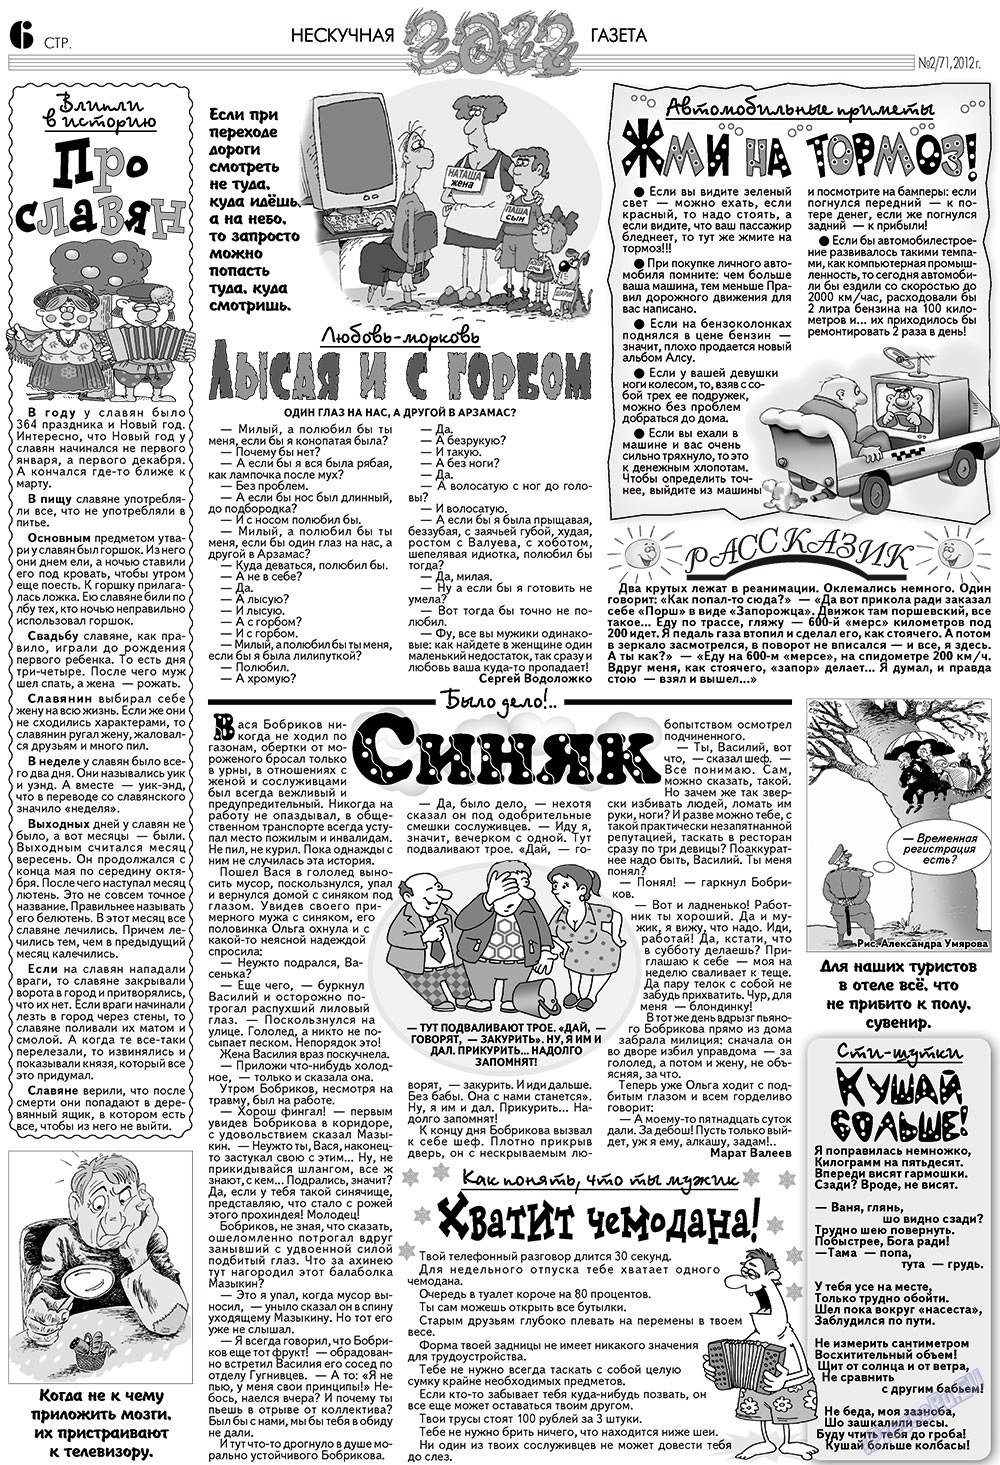 Нескучная газета (журнал). 2012 год, номер 2, стр. 6